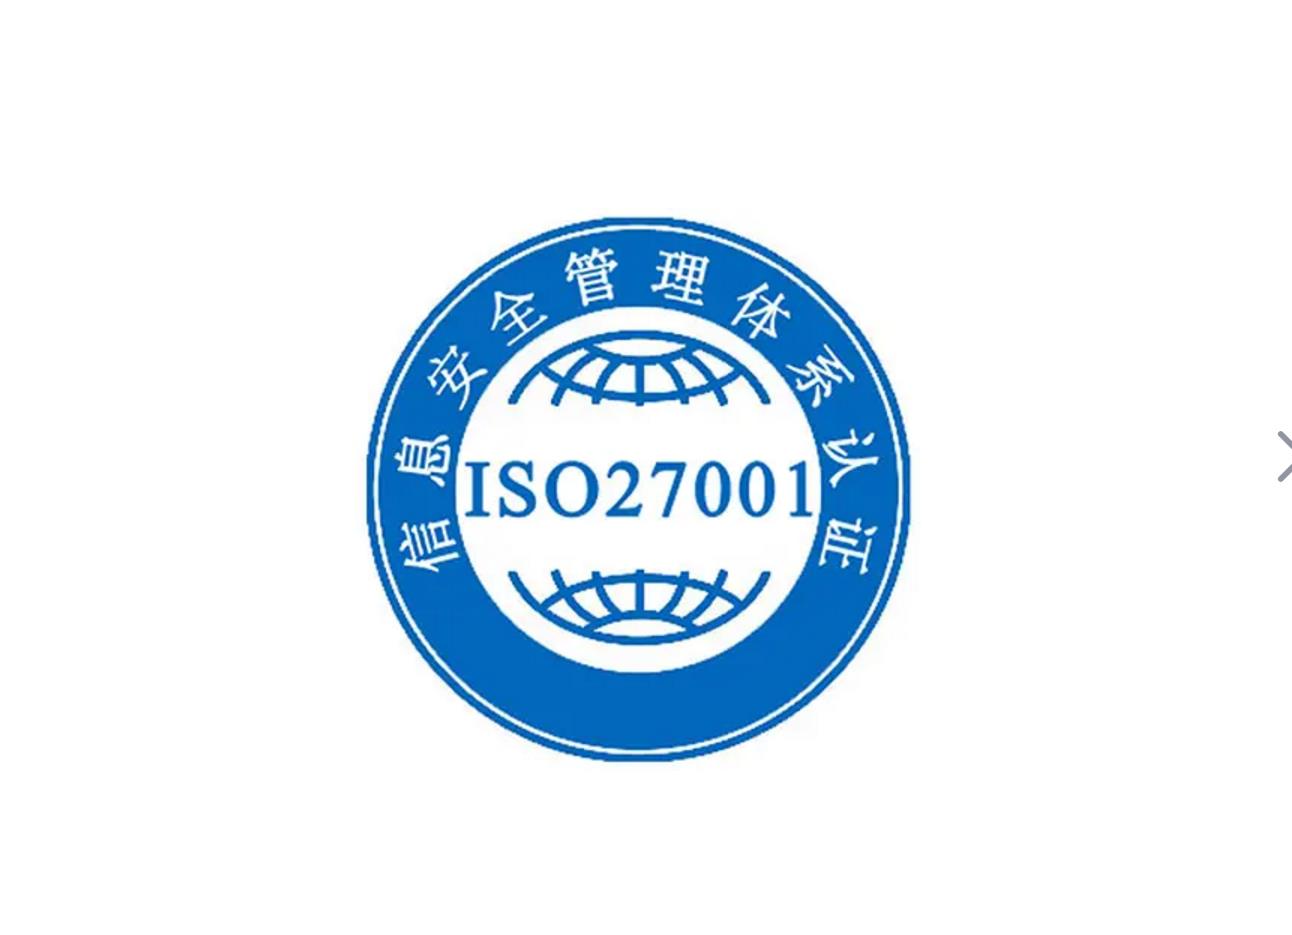 上海ISO环境管理体系认证咨询